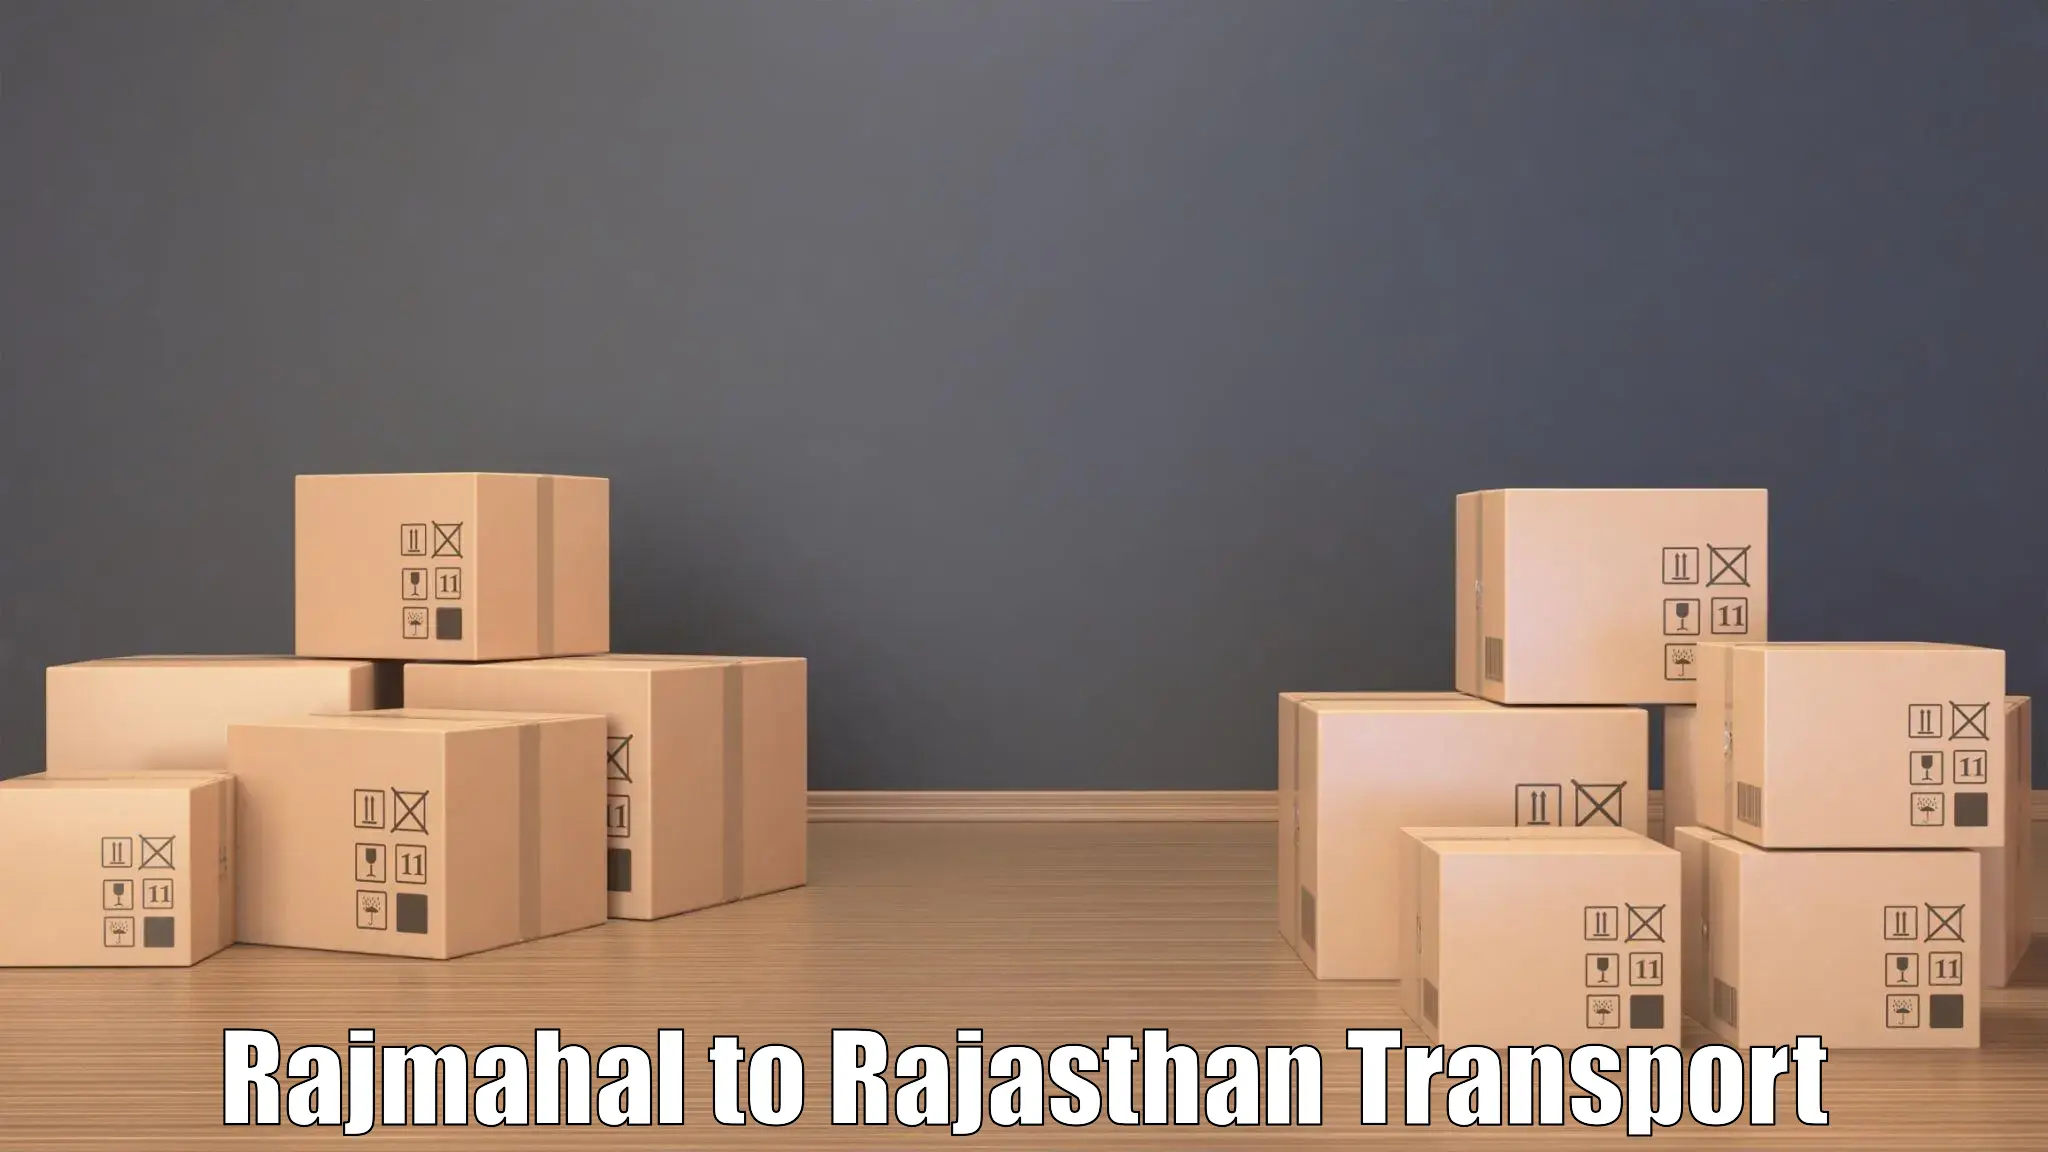 Express transport services Rajmahal to Jodhpur